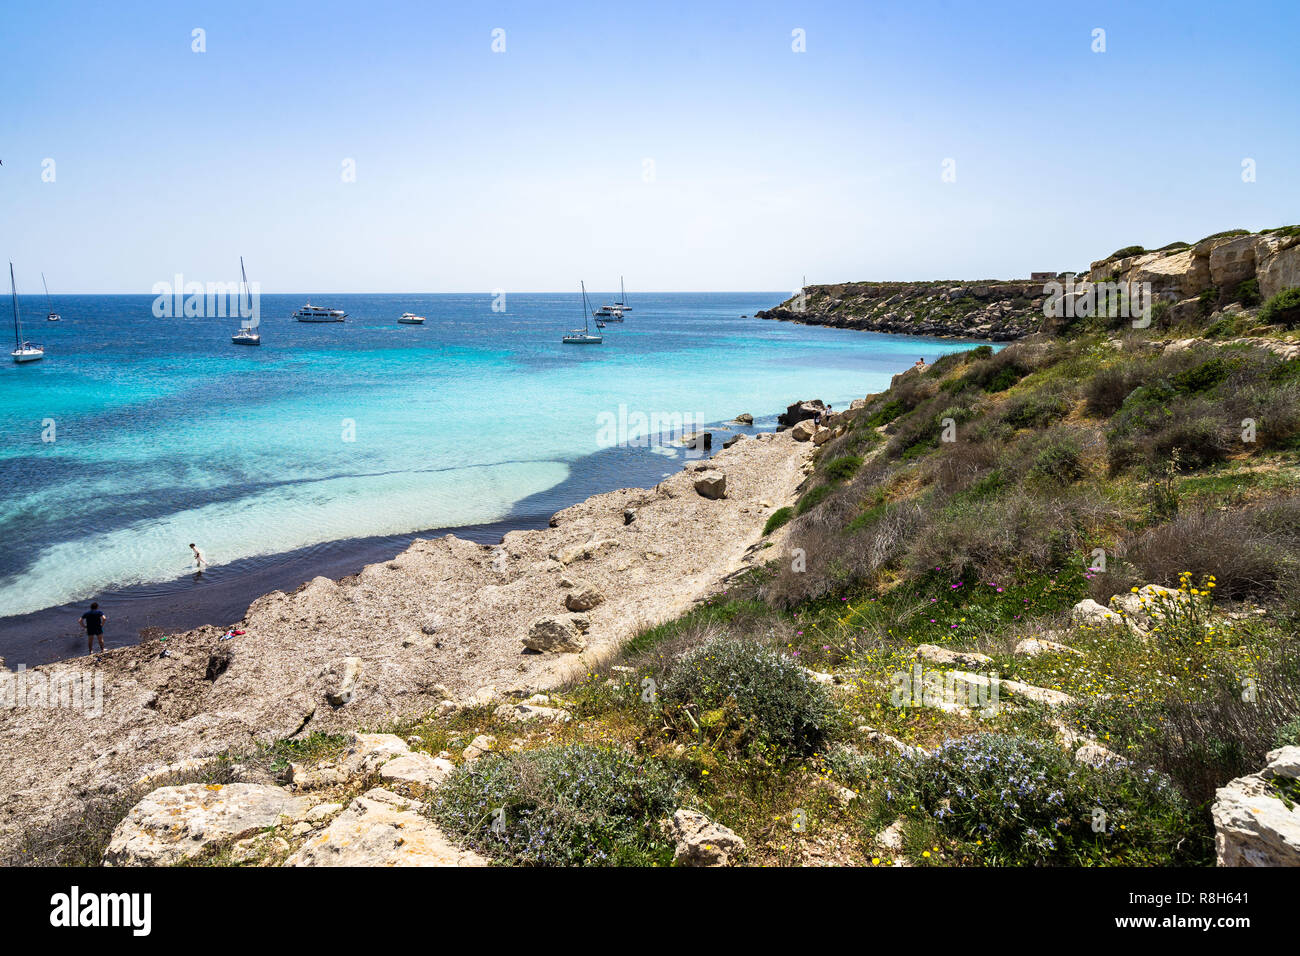 Seascape de Cala Azzurra, une petite plage de sable avec des eaux bleu azur et voiliers en arrière-plan, les îles Égades, Sicile, Italie Banque D'Images